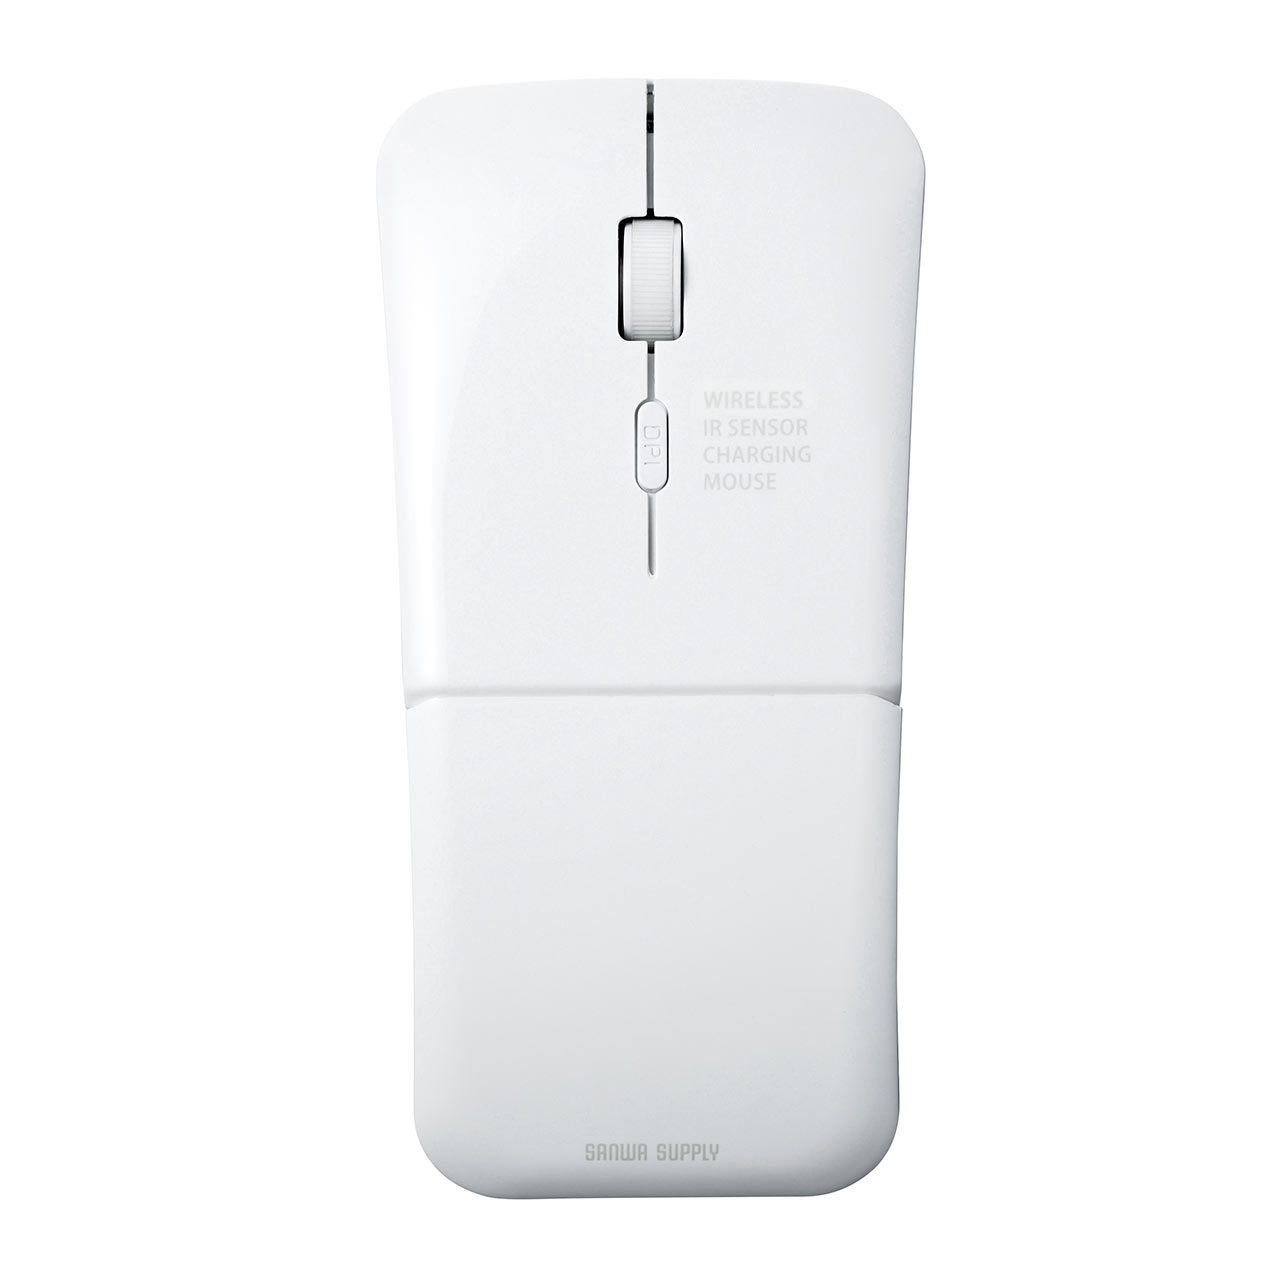 薄型ワイヤレスマウス USB充電式 IRセンサー 折りたたみ式 3ボタン ホワイト 400-MA121W